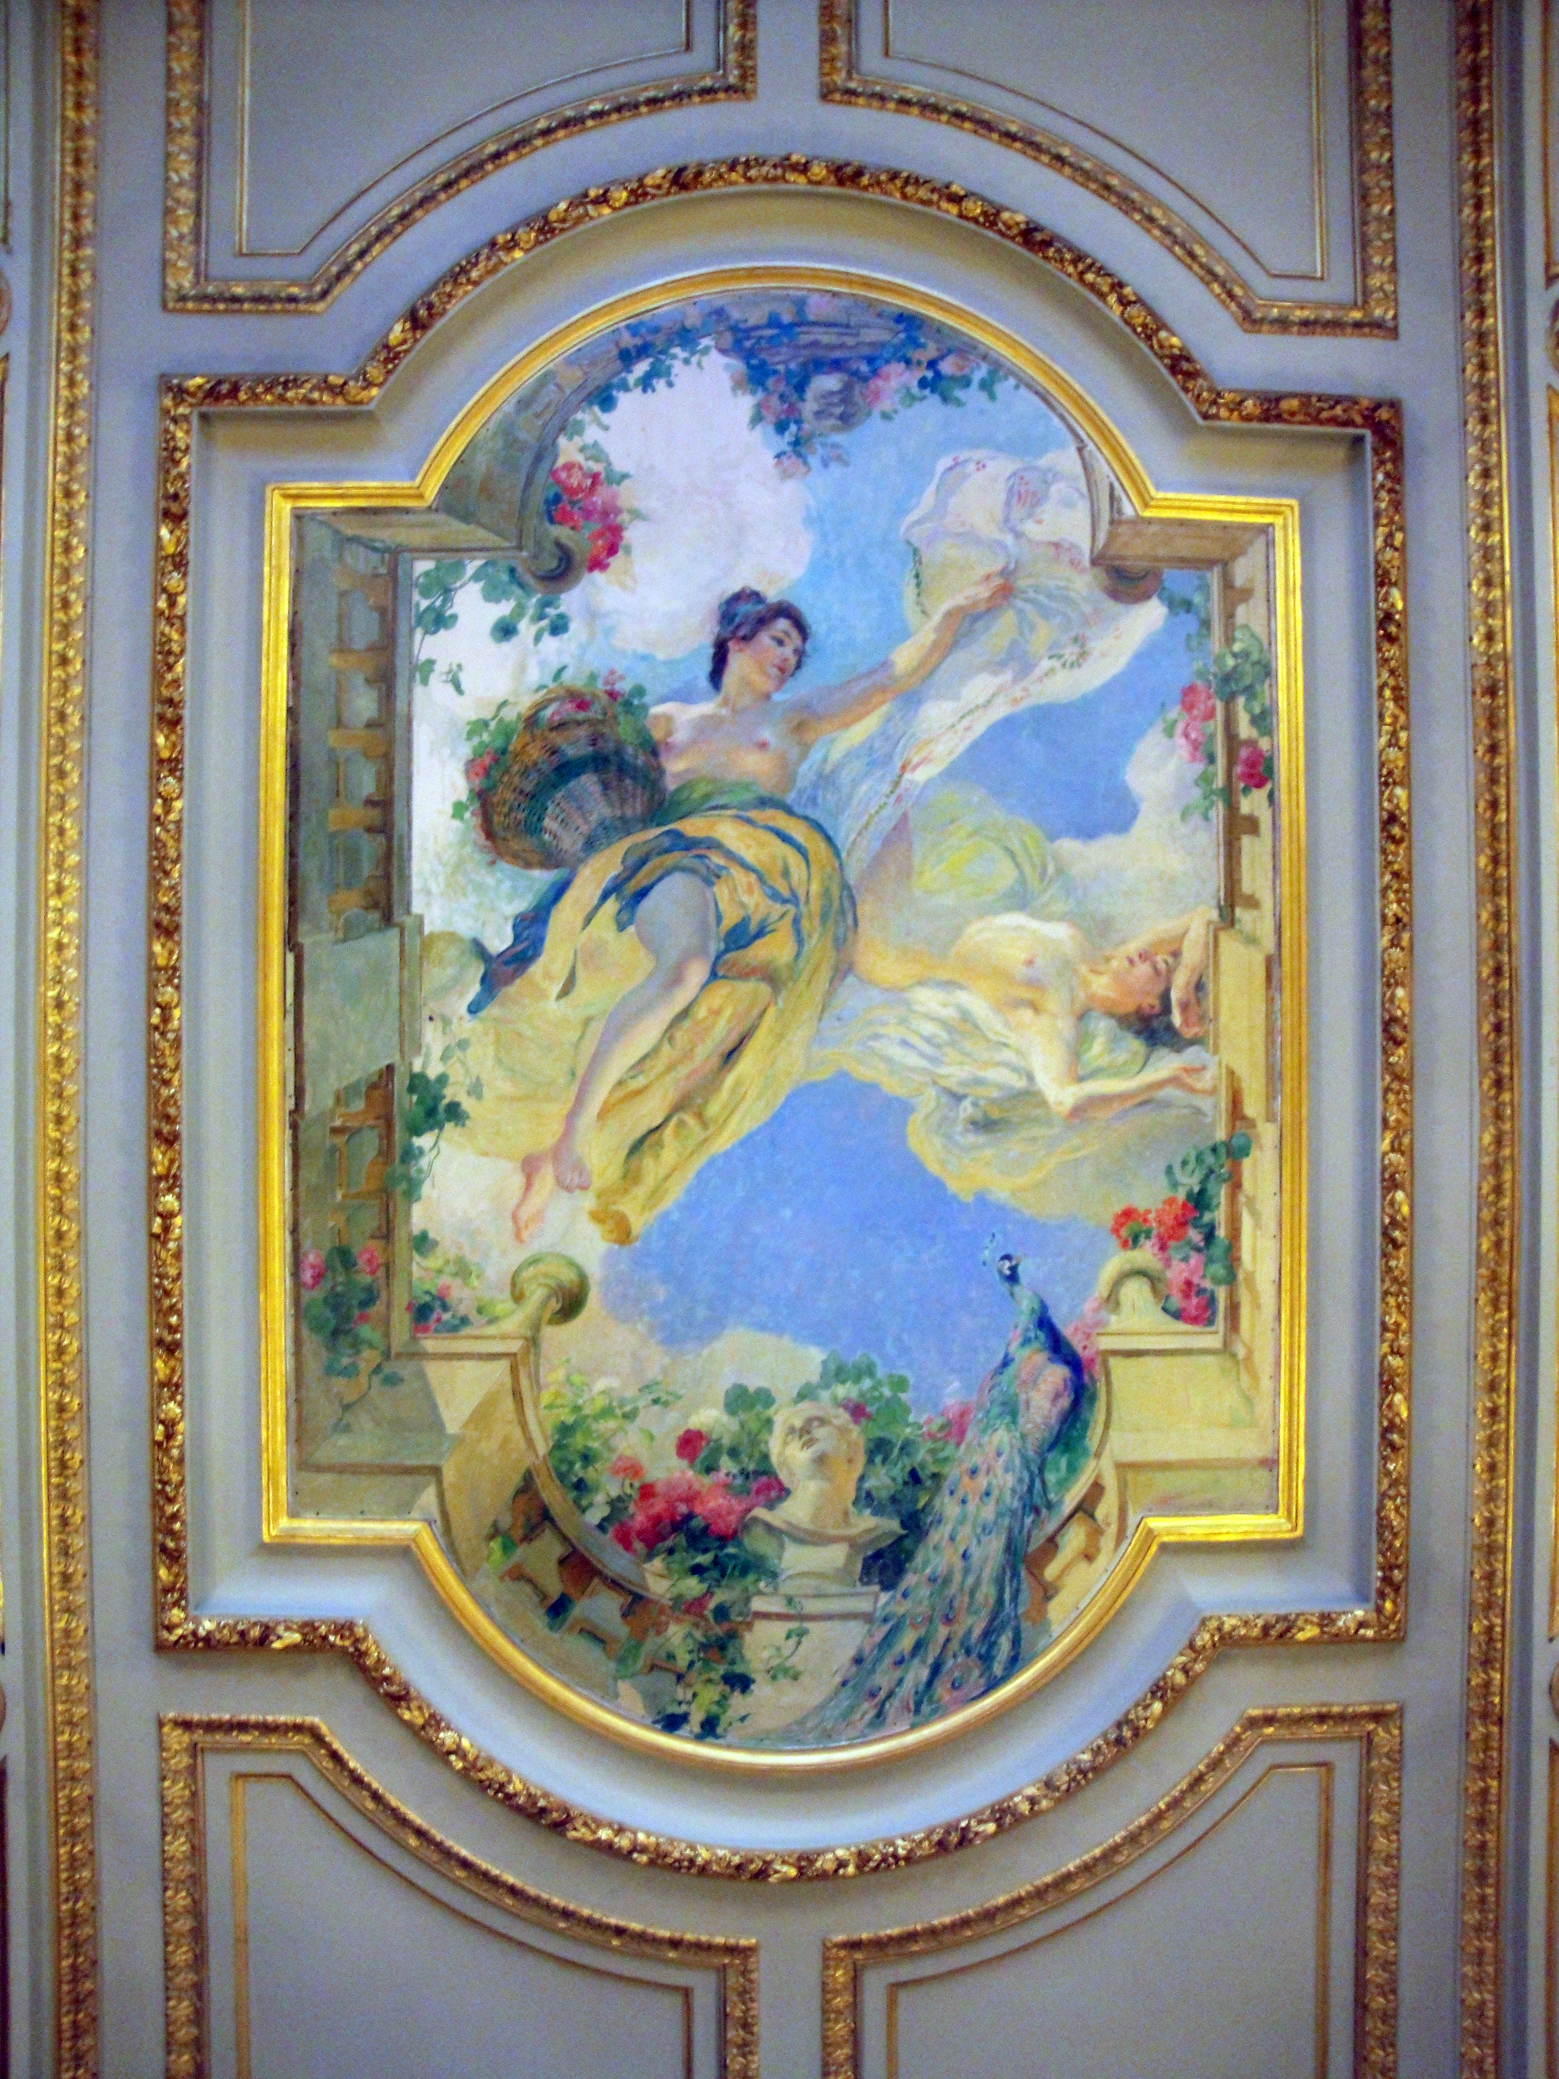 06.09.2011 Una de les nombroses pintures al sostre del Capitoli de Tolosa  Tolosa del Llenguadoc -  Jordi Bibià